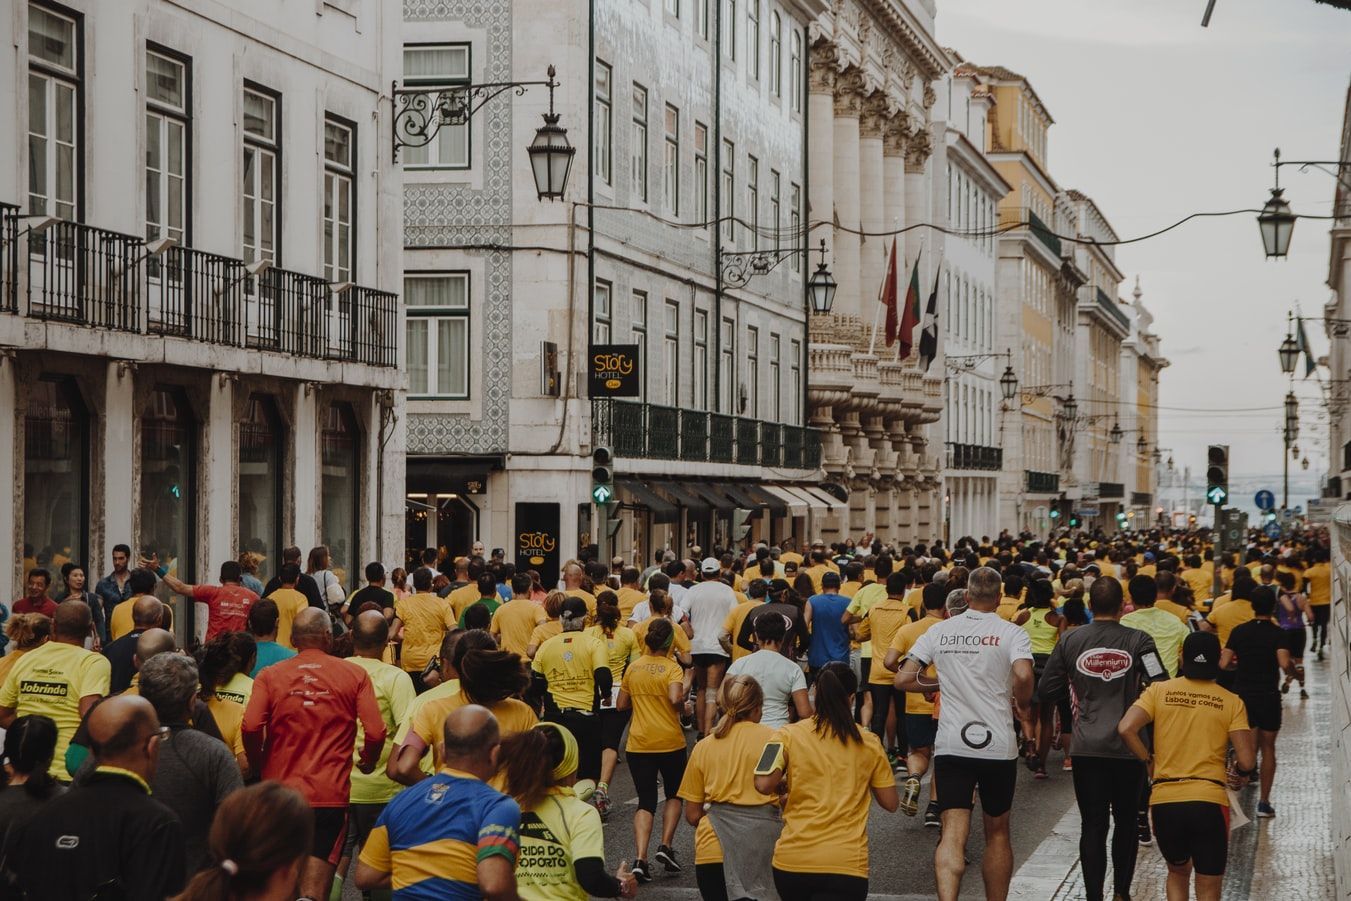 Як марафони впливають на здоров'я судин: дослідження